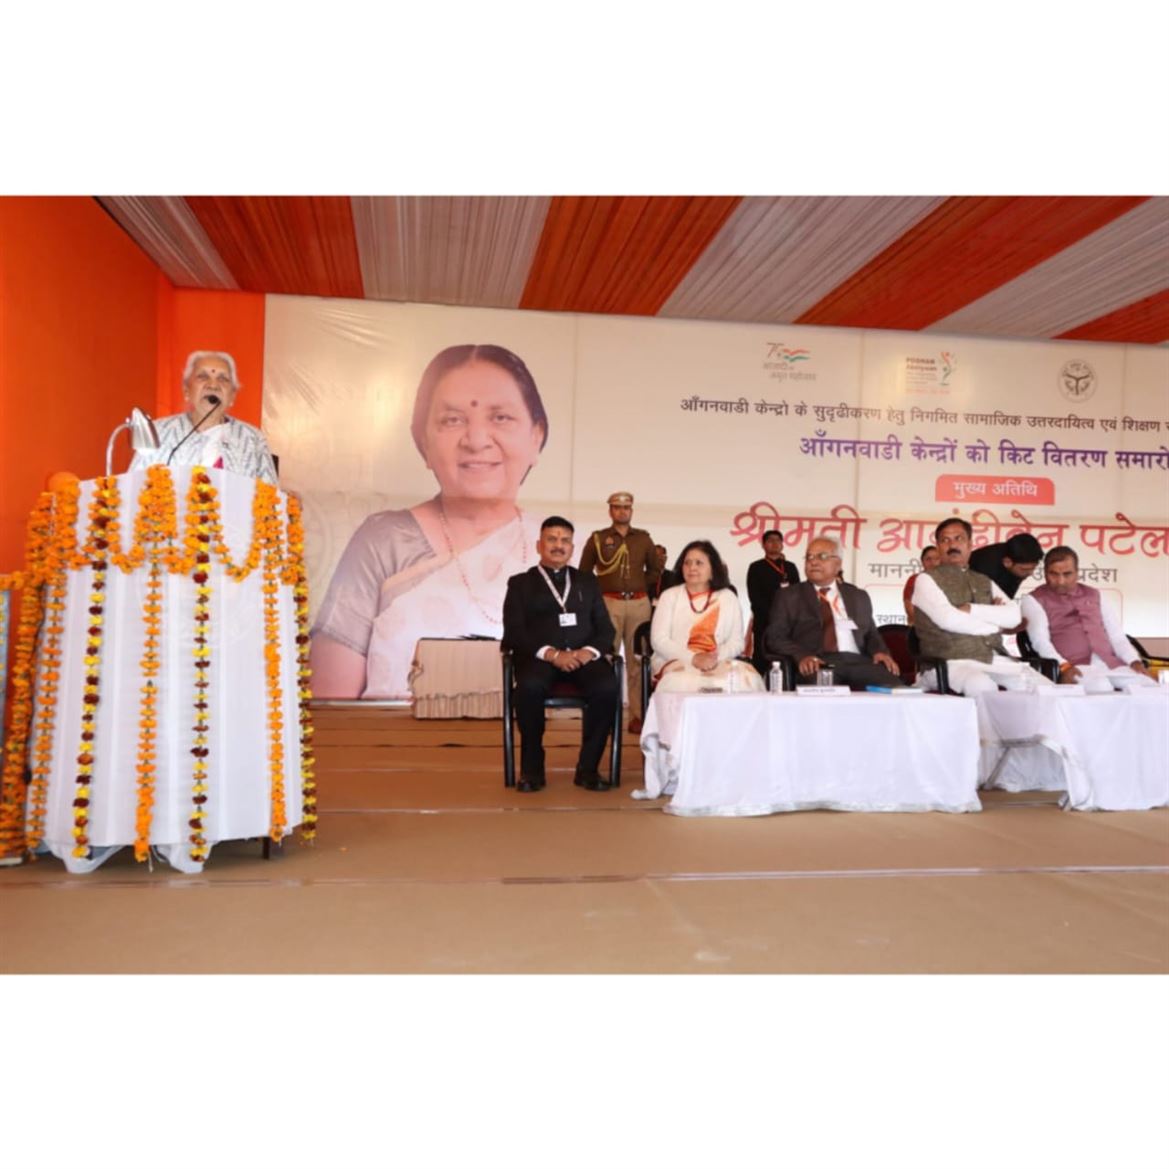 The Governor distributed kits to 325 Anganwadi centers in Saharanpur district,  enhancing their facilities and capabilities./राज्यपाल ने जनपद सहारनपुर में  325 आंगनवाडी केन्द्रों को सुविधा संपन्न बाने हेतु किट वितरित की।  